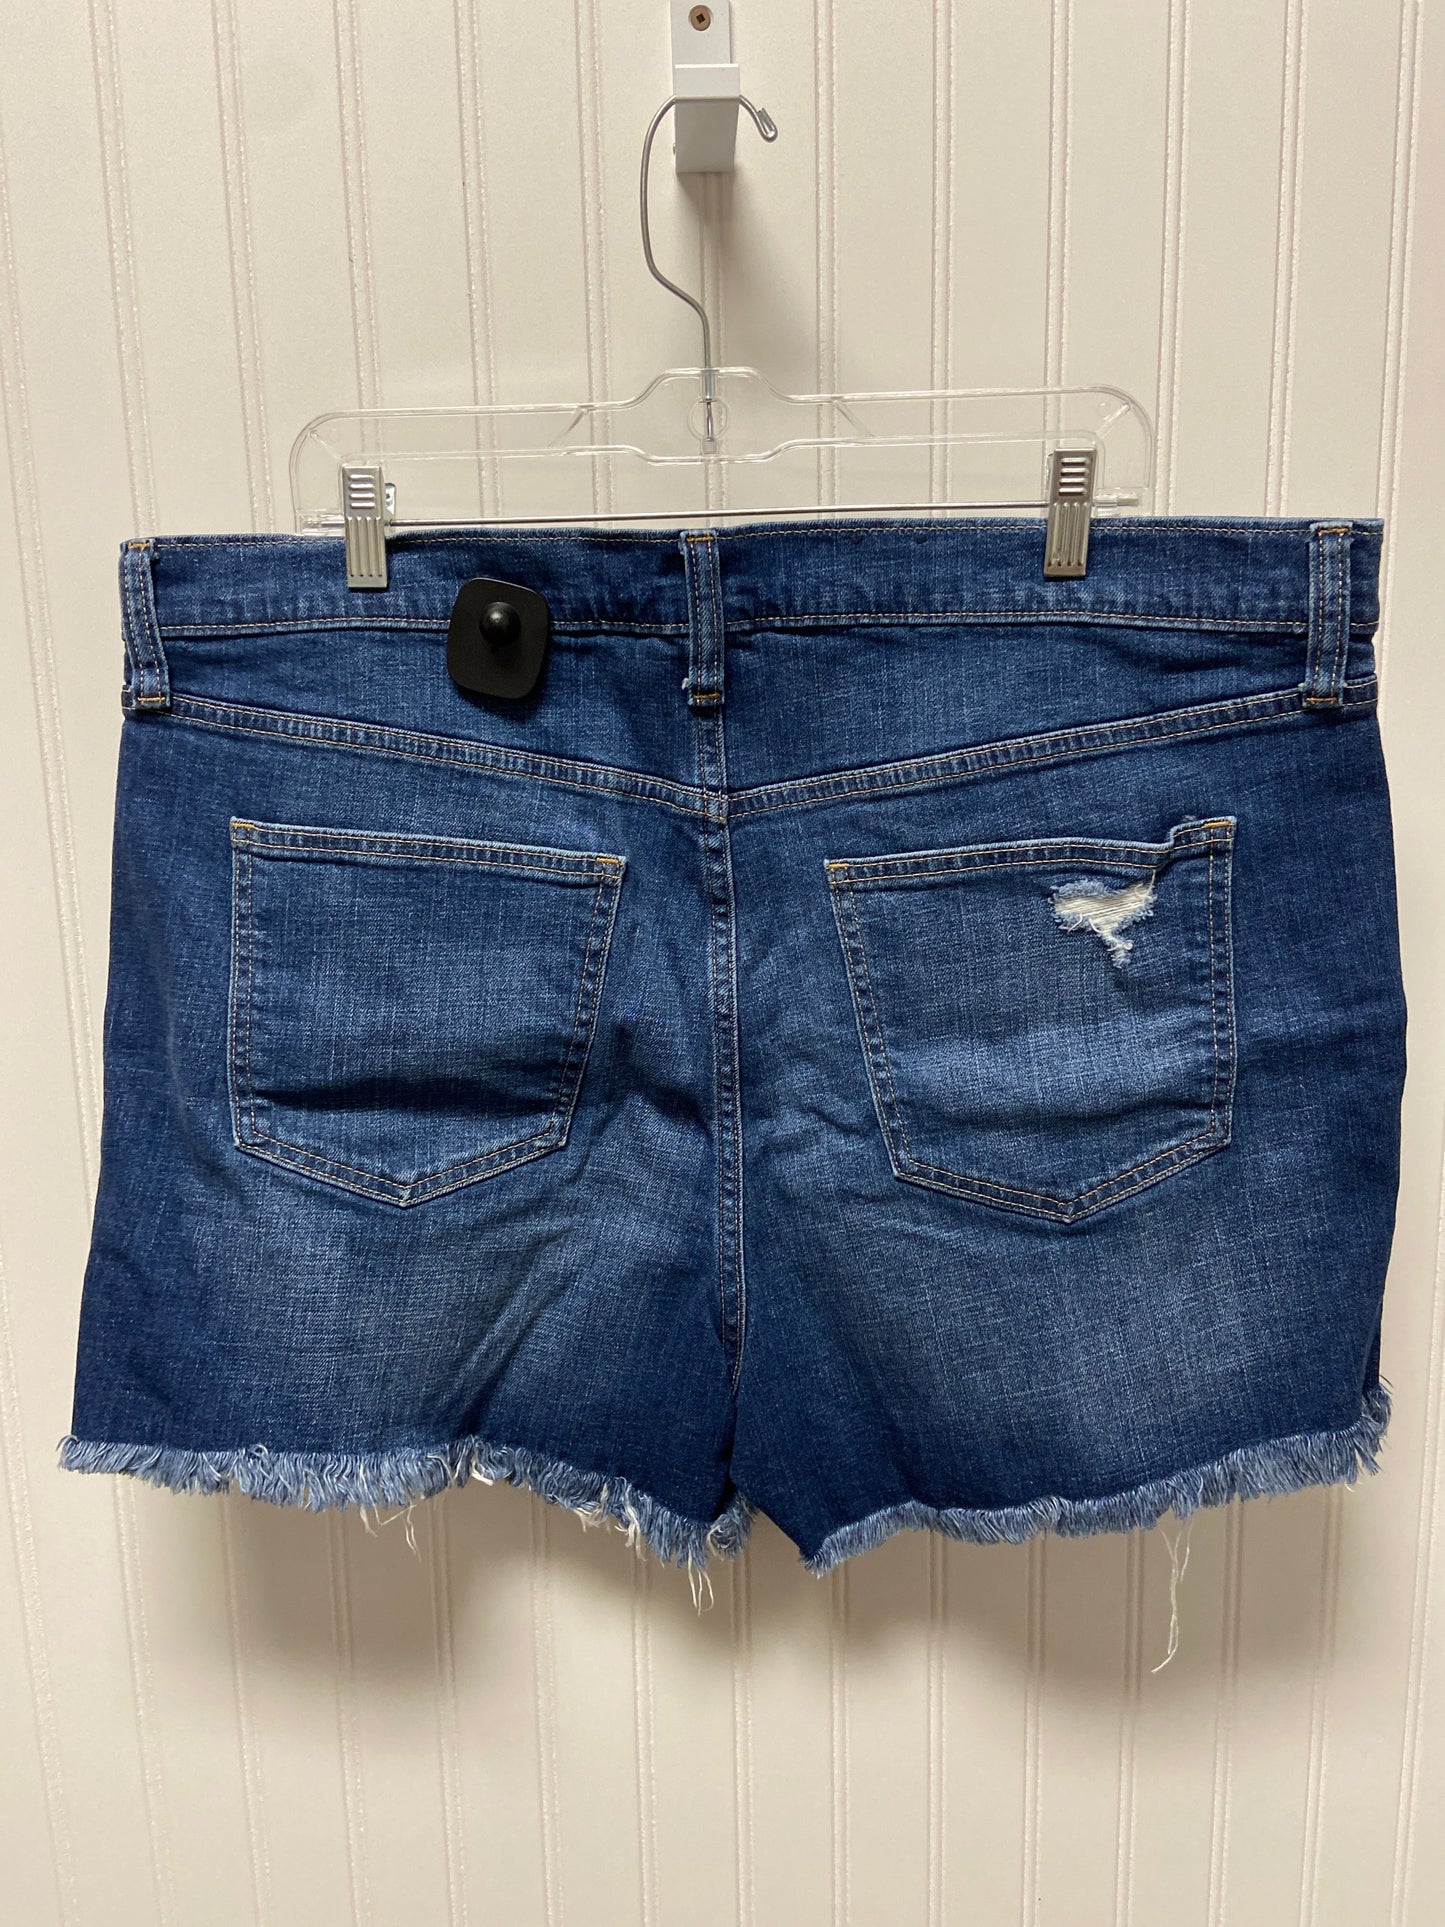 Blue Denim Shorts Gap, Size 20